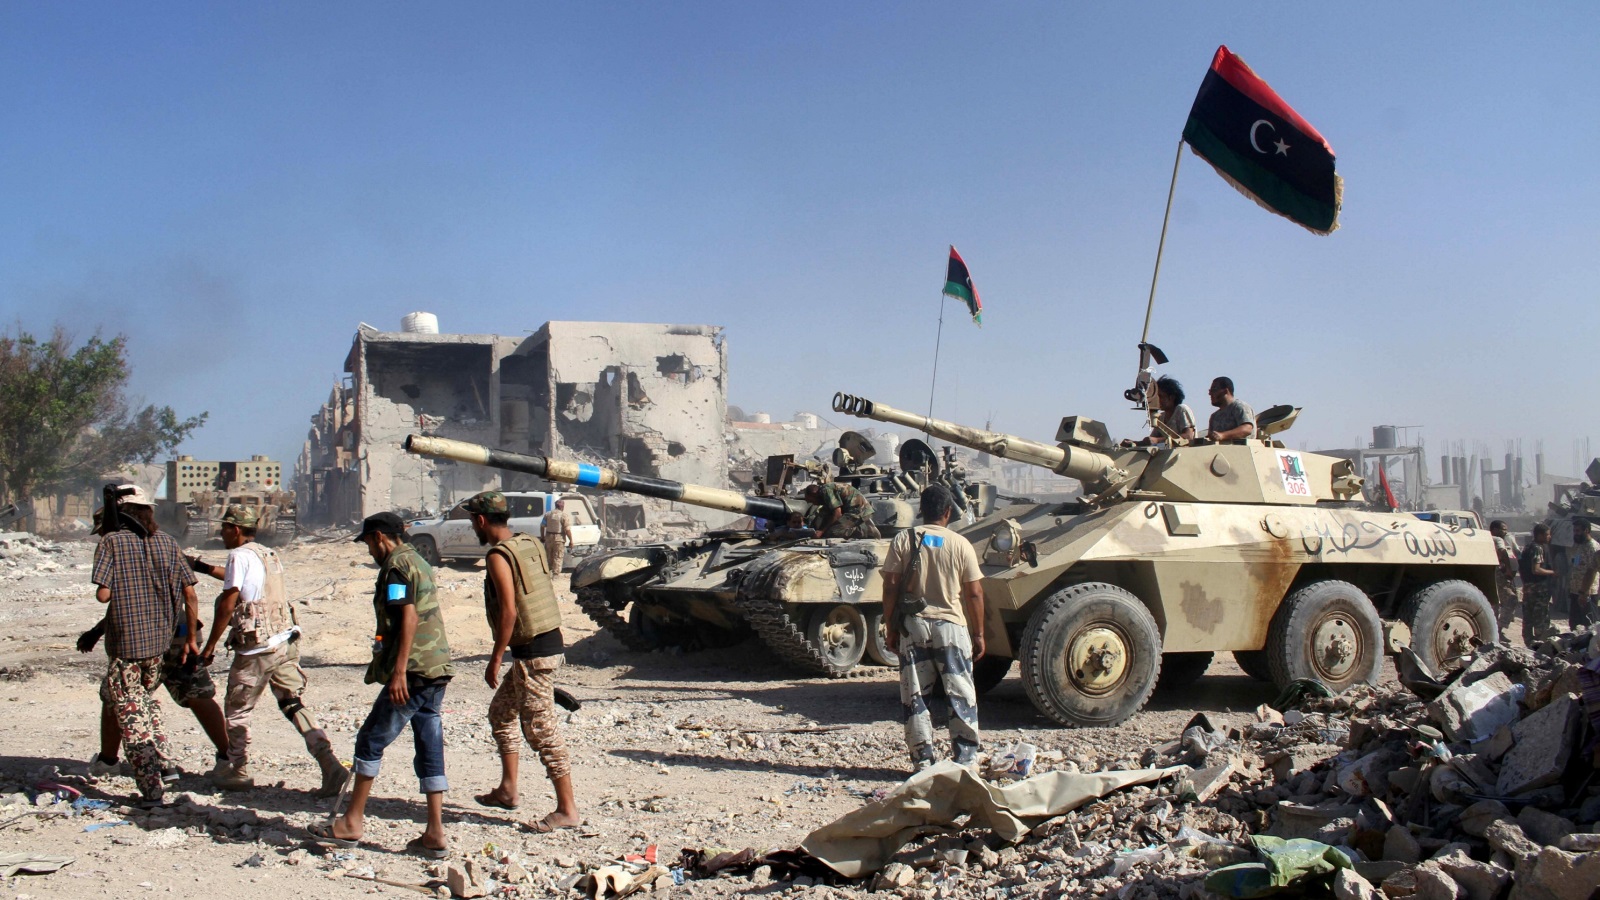  معارك بلا حسم بادية في الأفق إذن تنتظر ليبيا، وهي معارك متفرقة جغرافيًا تتسم بالأجندات القبلية المختلفة (رويترز)